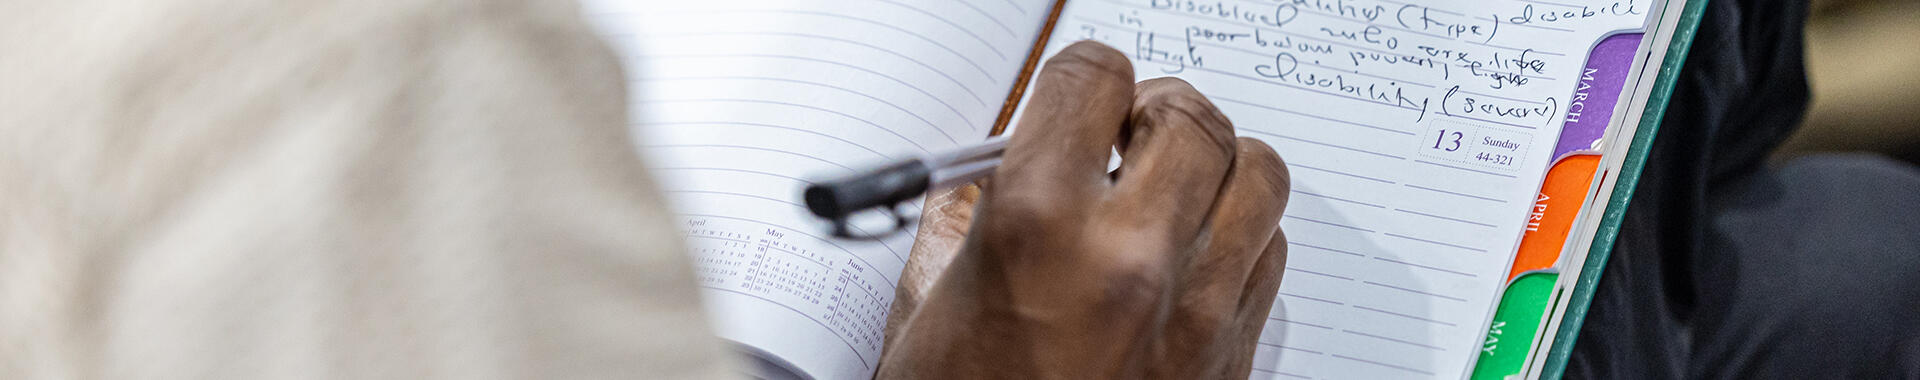 Tanzanian man writing on a notebook. Image: Imani Nsamila / UNU-WIDER